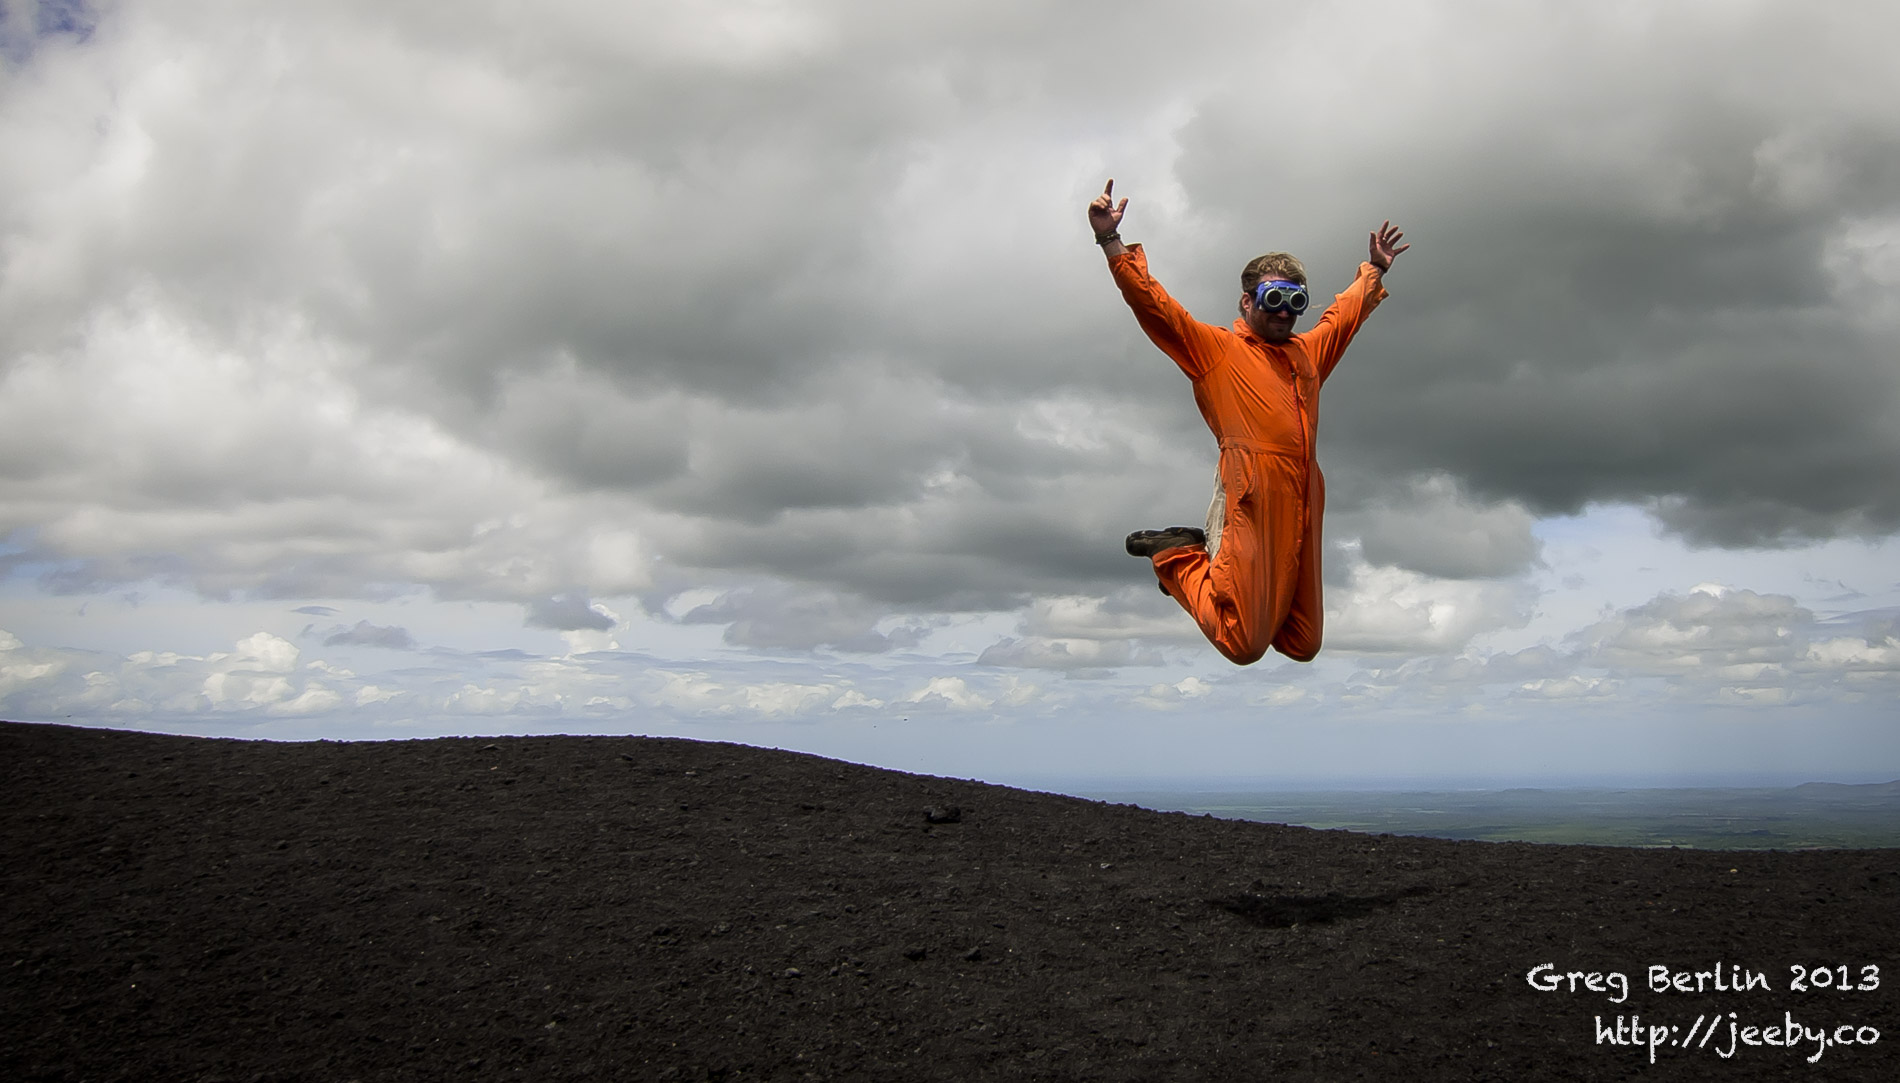 2013-Volcano-boarding-jump.jpg